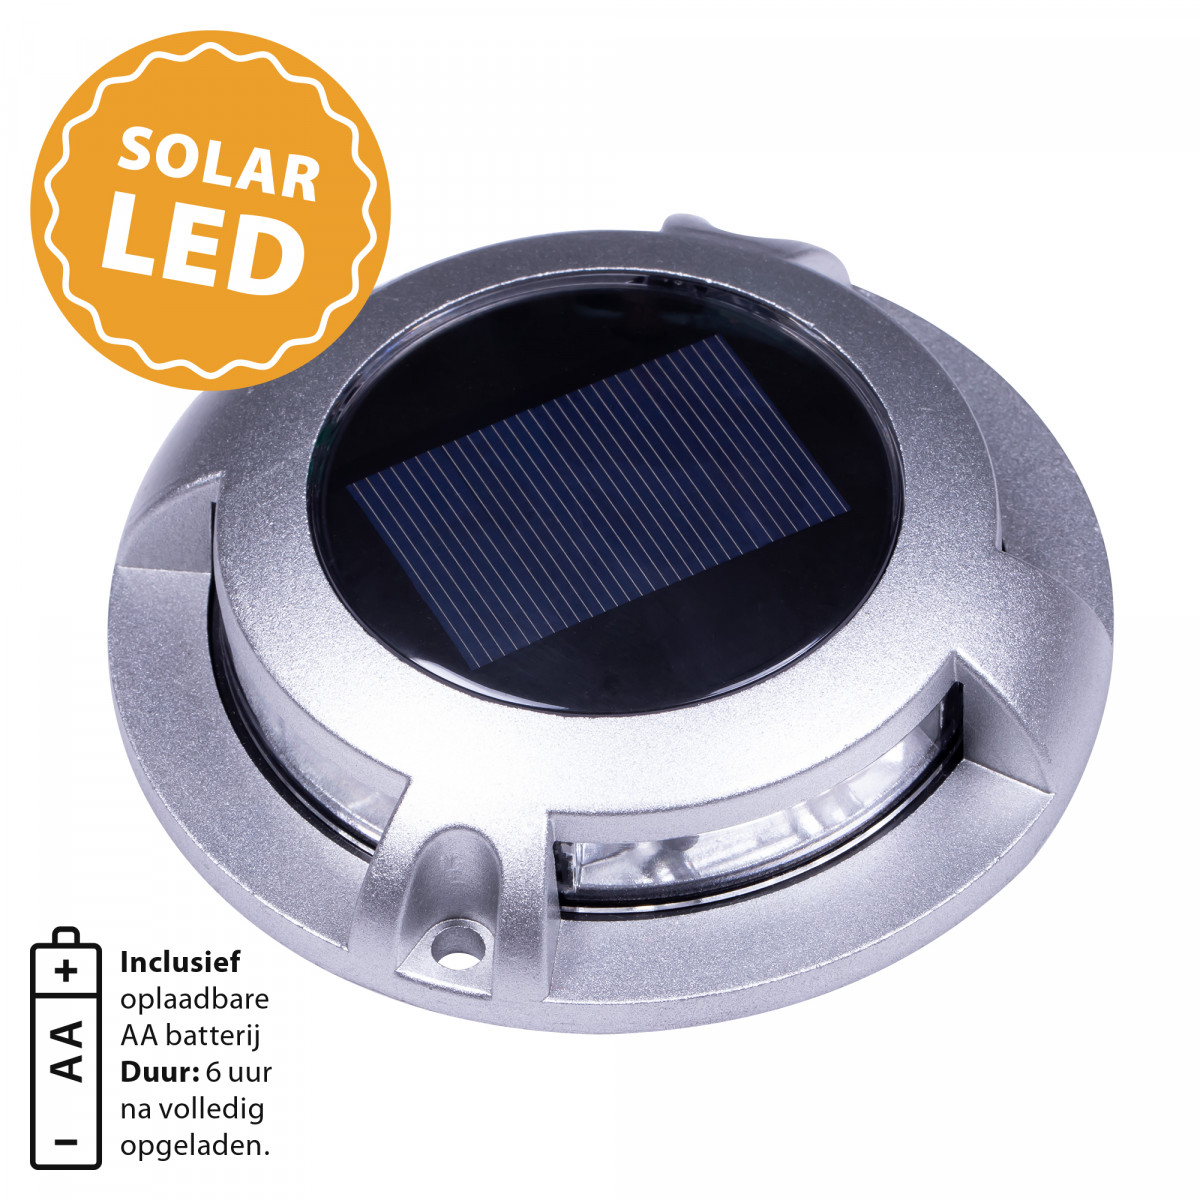 spot au sol - Solar LED Decklight - lampe solaire - spot à énergie solaire - Nostalux